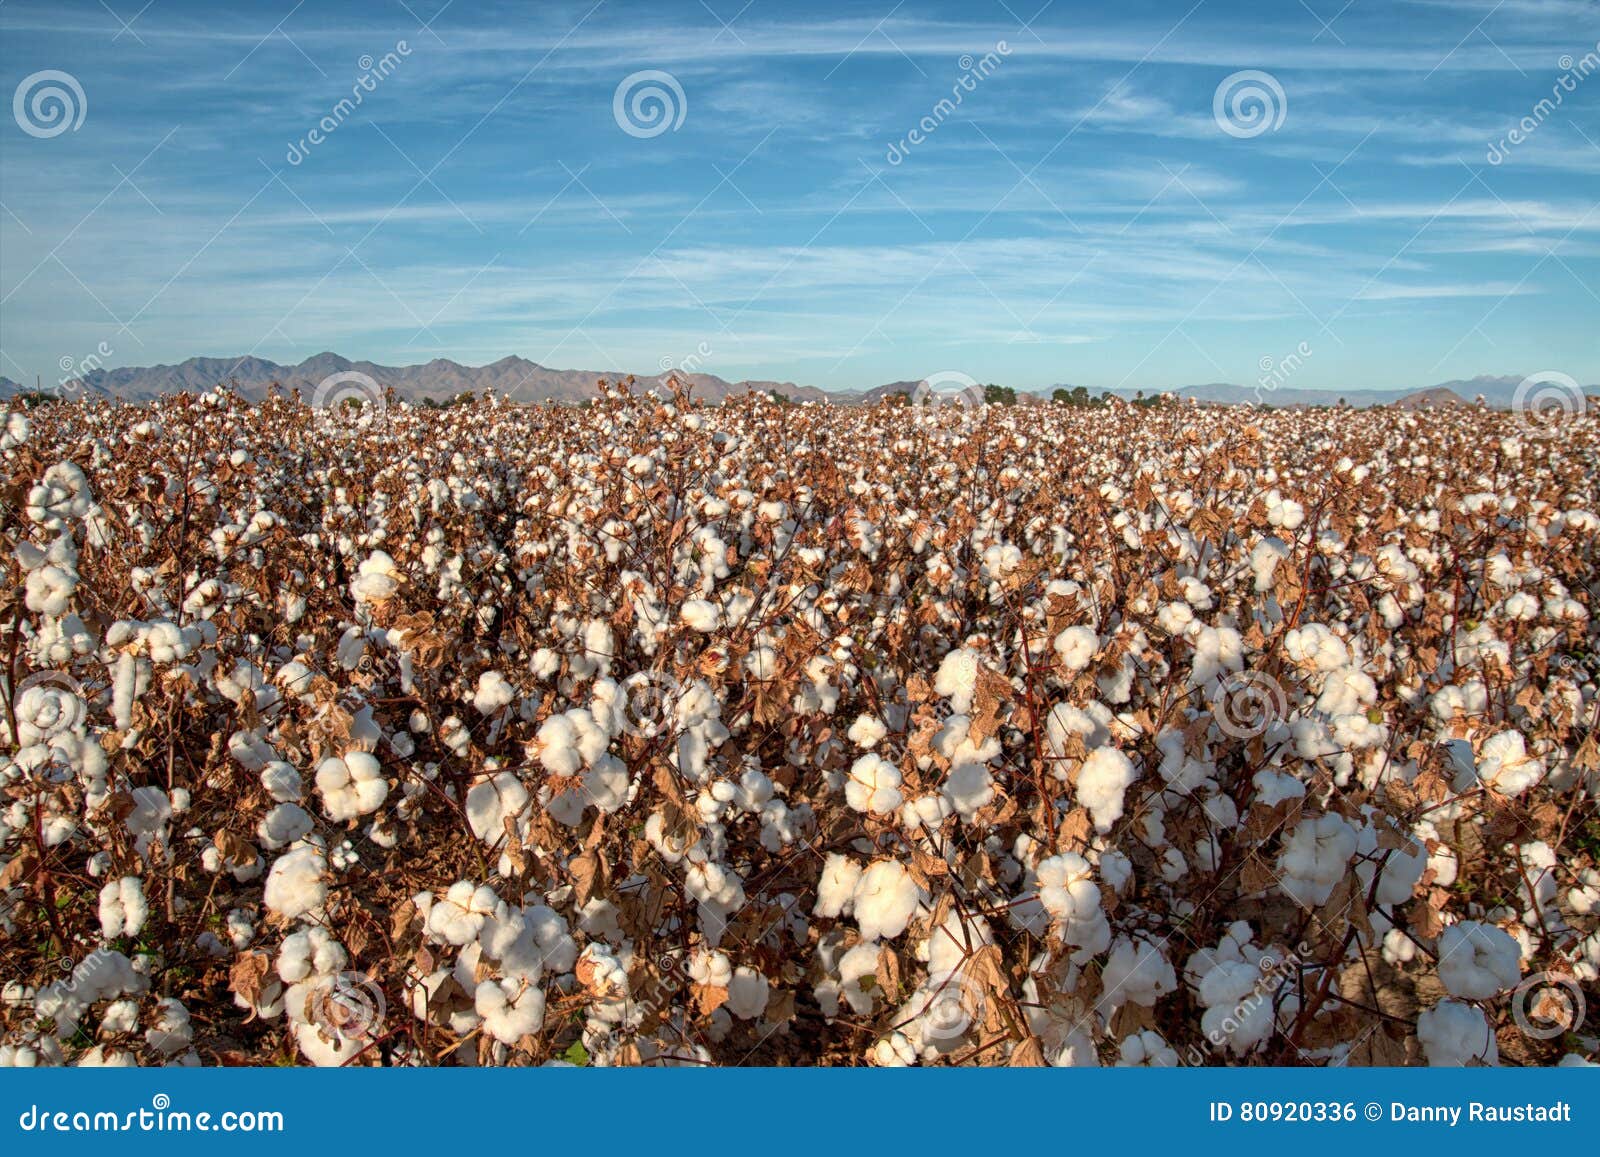 pima cotton field